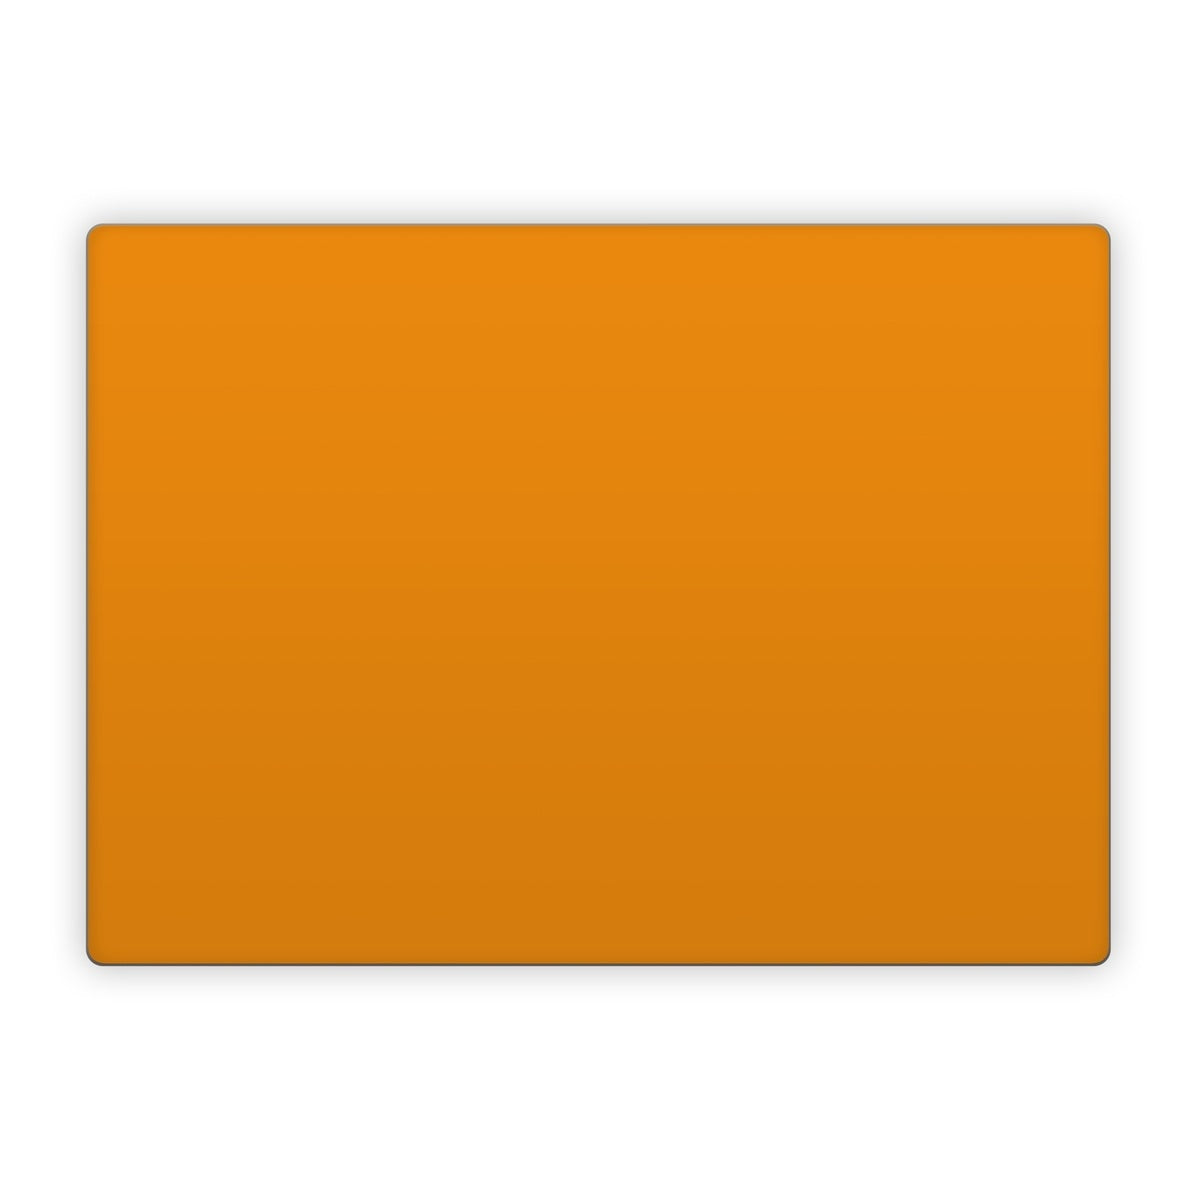 Solid State Orange - Microsoft Surface Laptop Skin